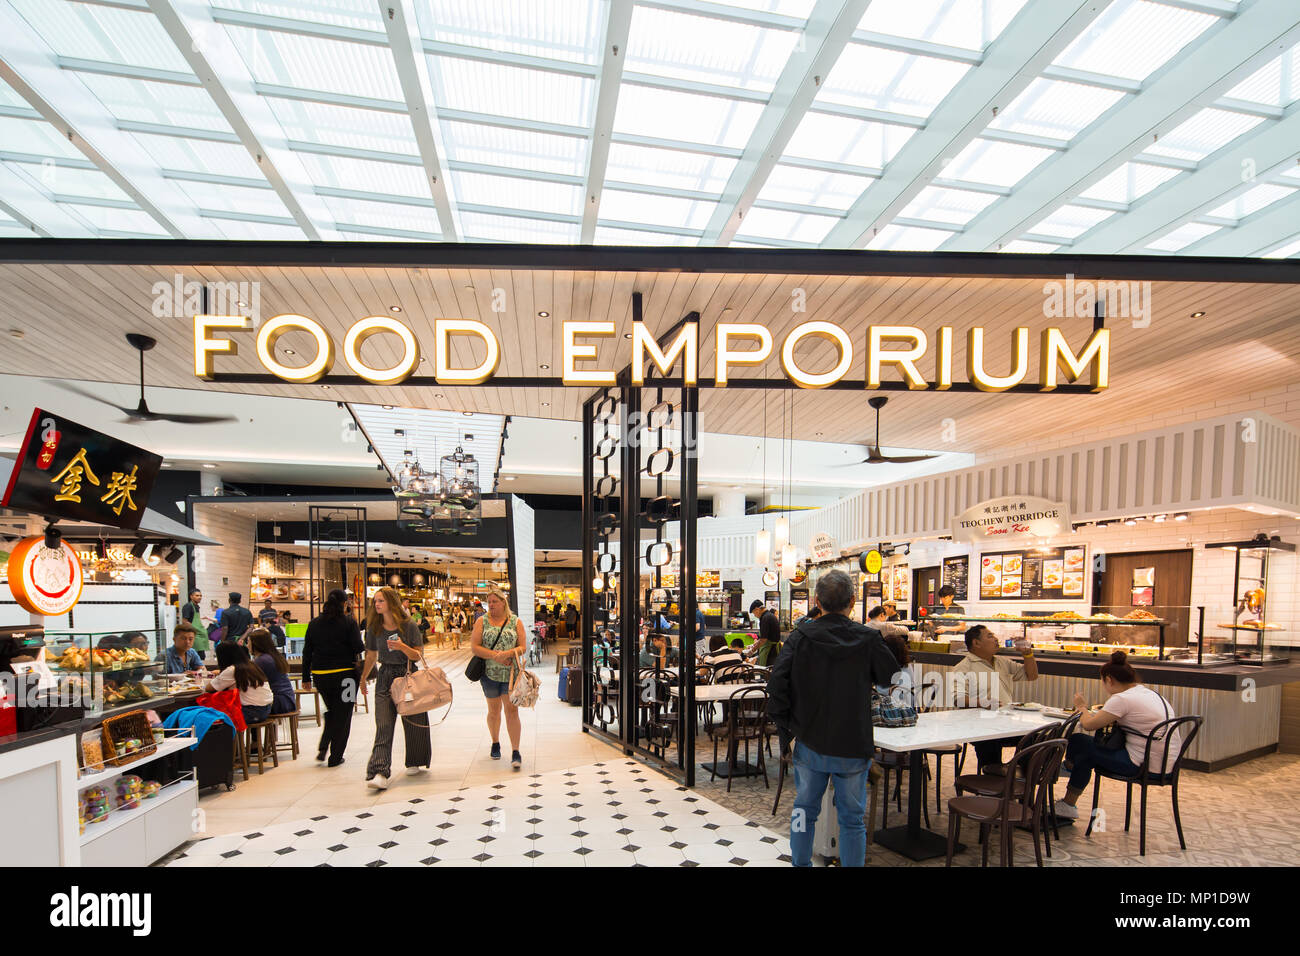 Innenarchitektur des Eingangs zum Food Emporium oder allgemein bekannt als Food Court oder Essbereich am Flughafen Singapur Changi Terminal 4. Stockfoto